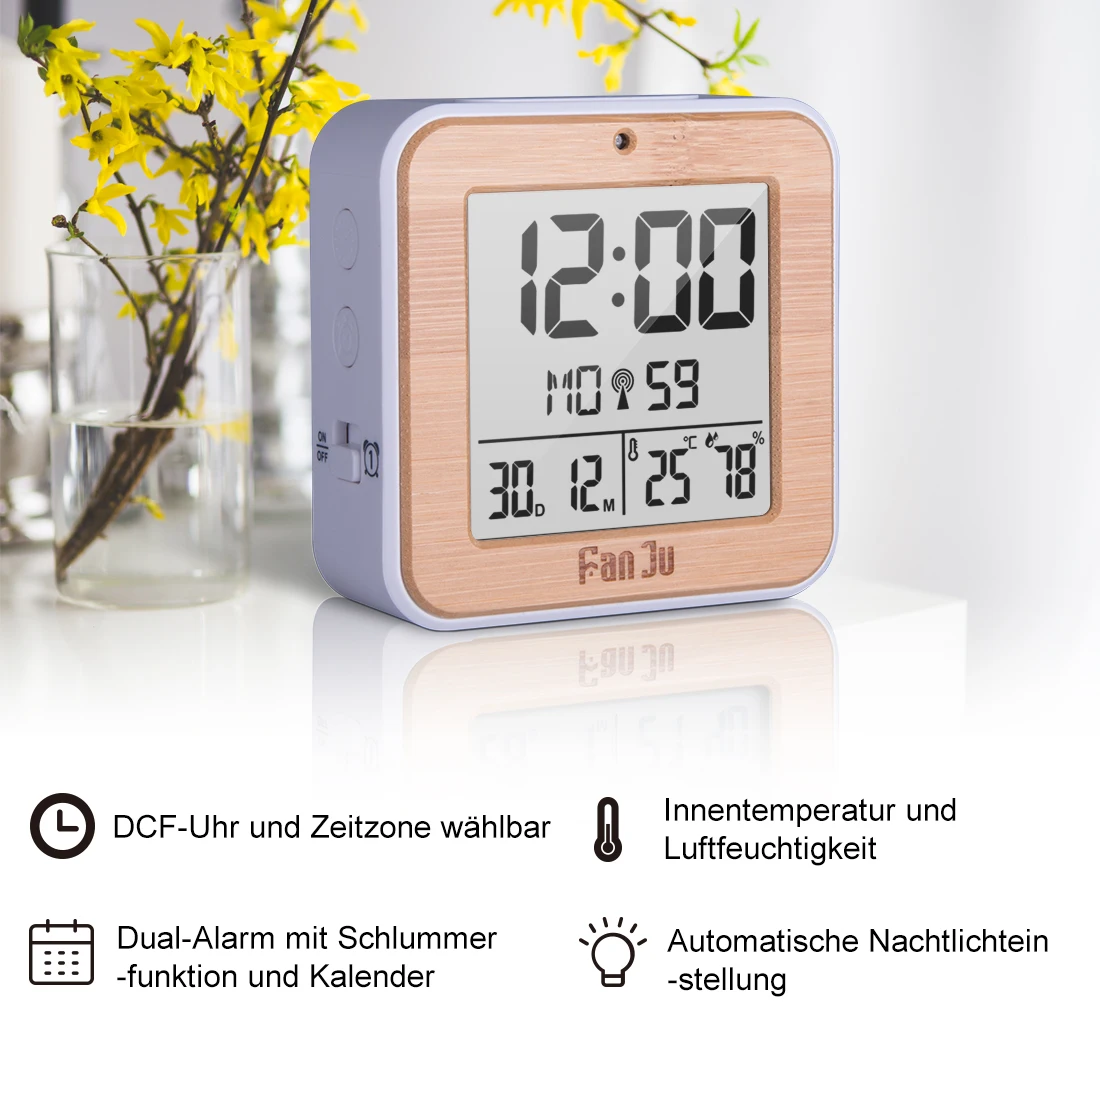 FanJu FJ3533 Цифровой Будильник Светодиодный Настольные часы температура влажность двойной будильник автоматическая подсветка повтора даты термометр дисплей